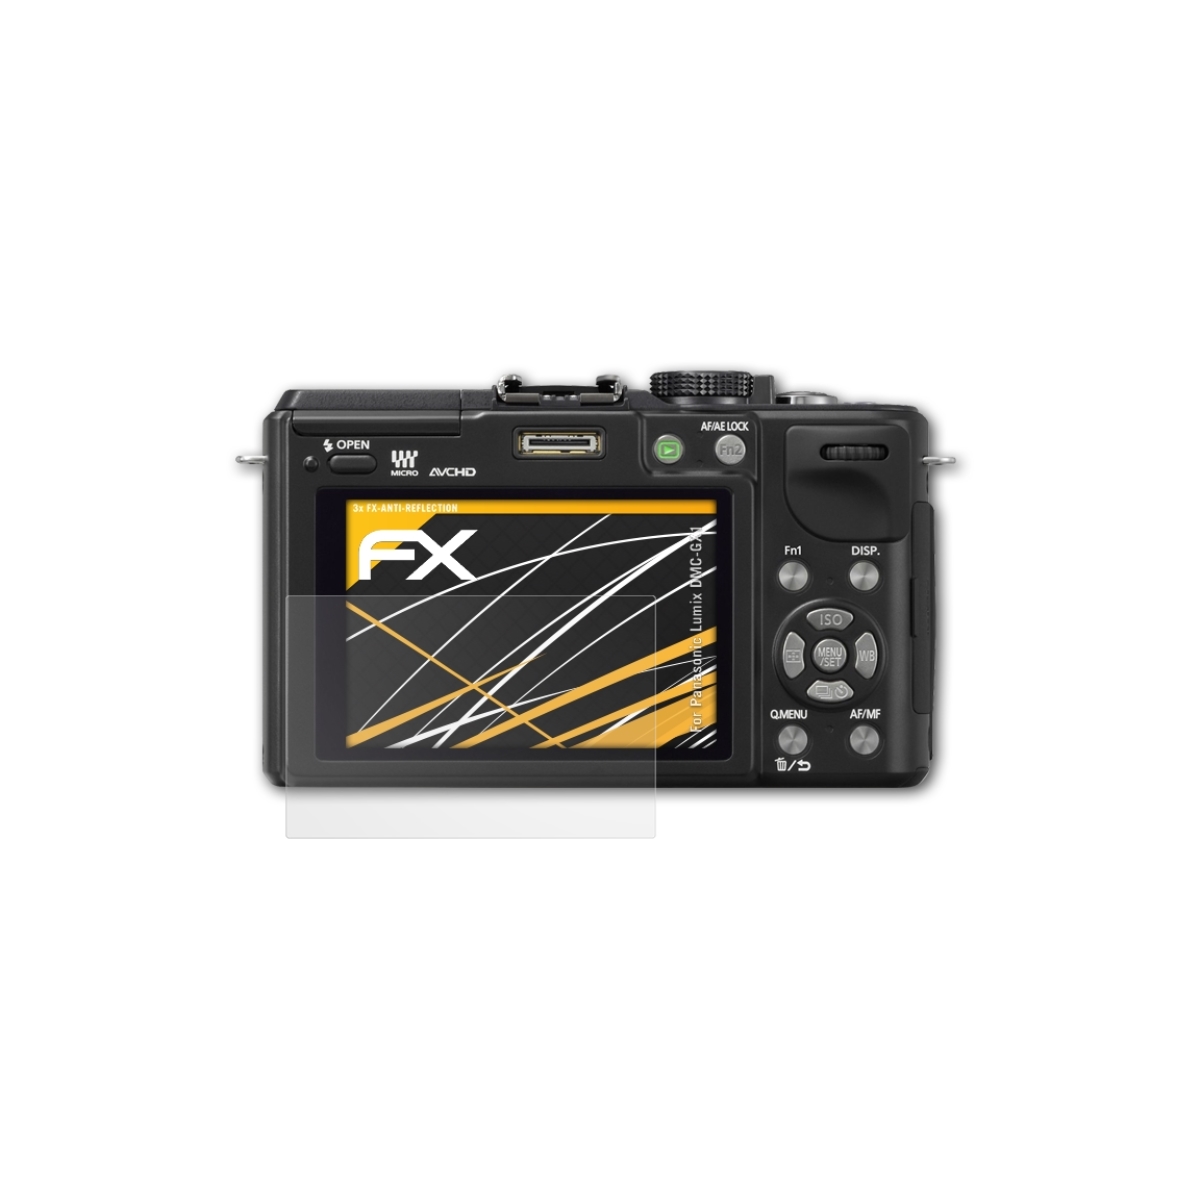 ATFOLIX 3x Panasonic FX-Antireflex DMC-GX1) Displayschutz(für Lumix